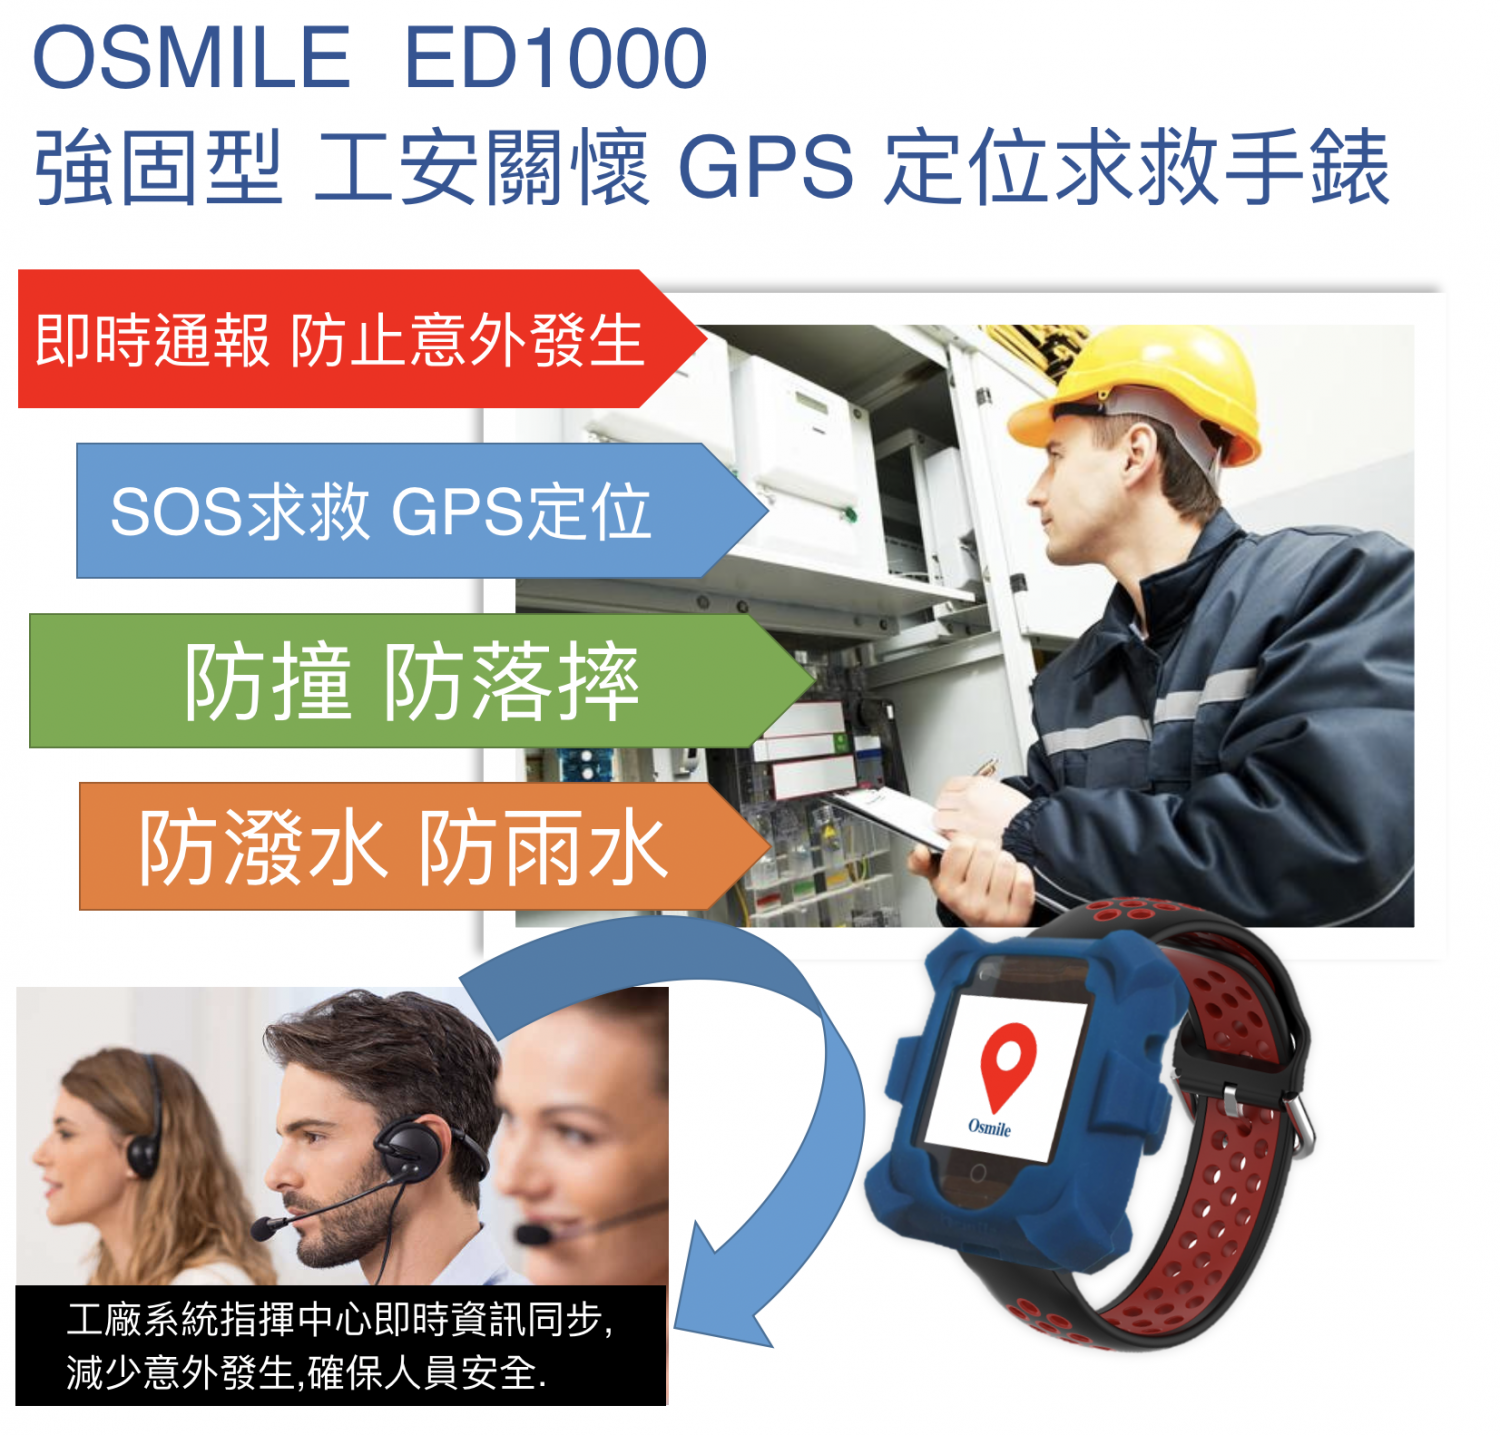 Osmile_ED1000 (L) 工安關懷與科技救災智能定位求救手錶  (強固型)